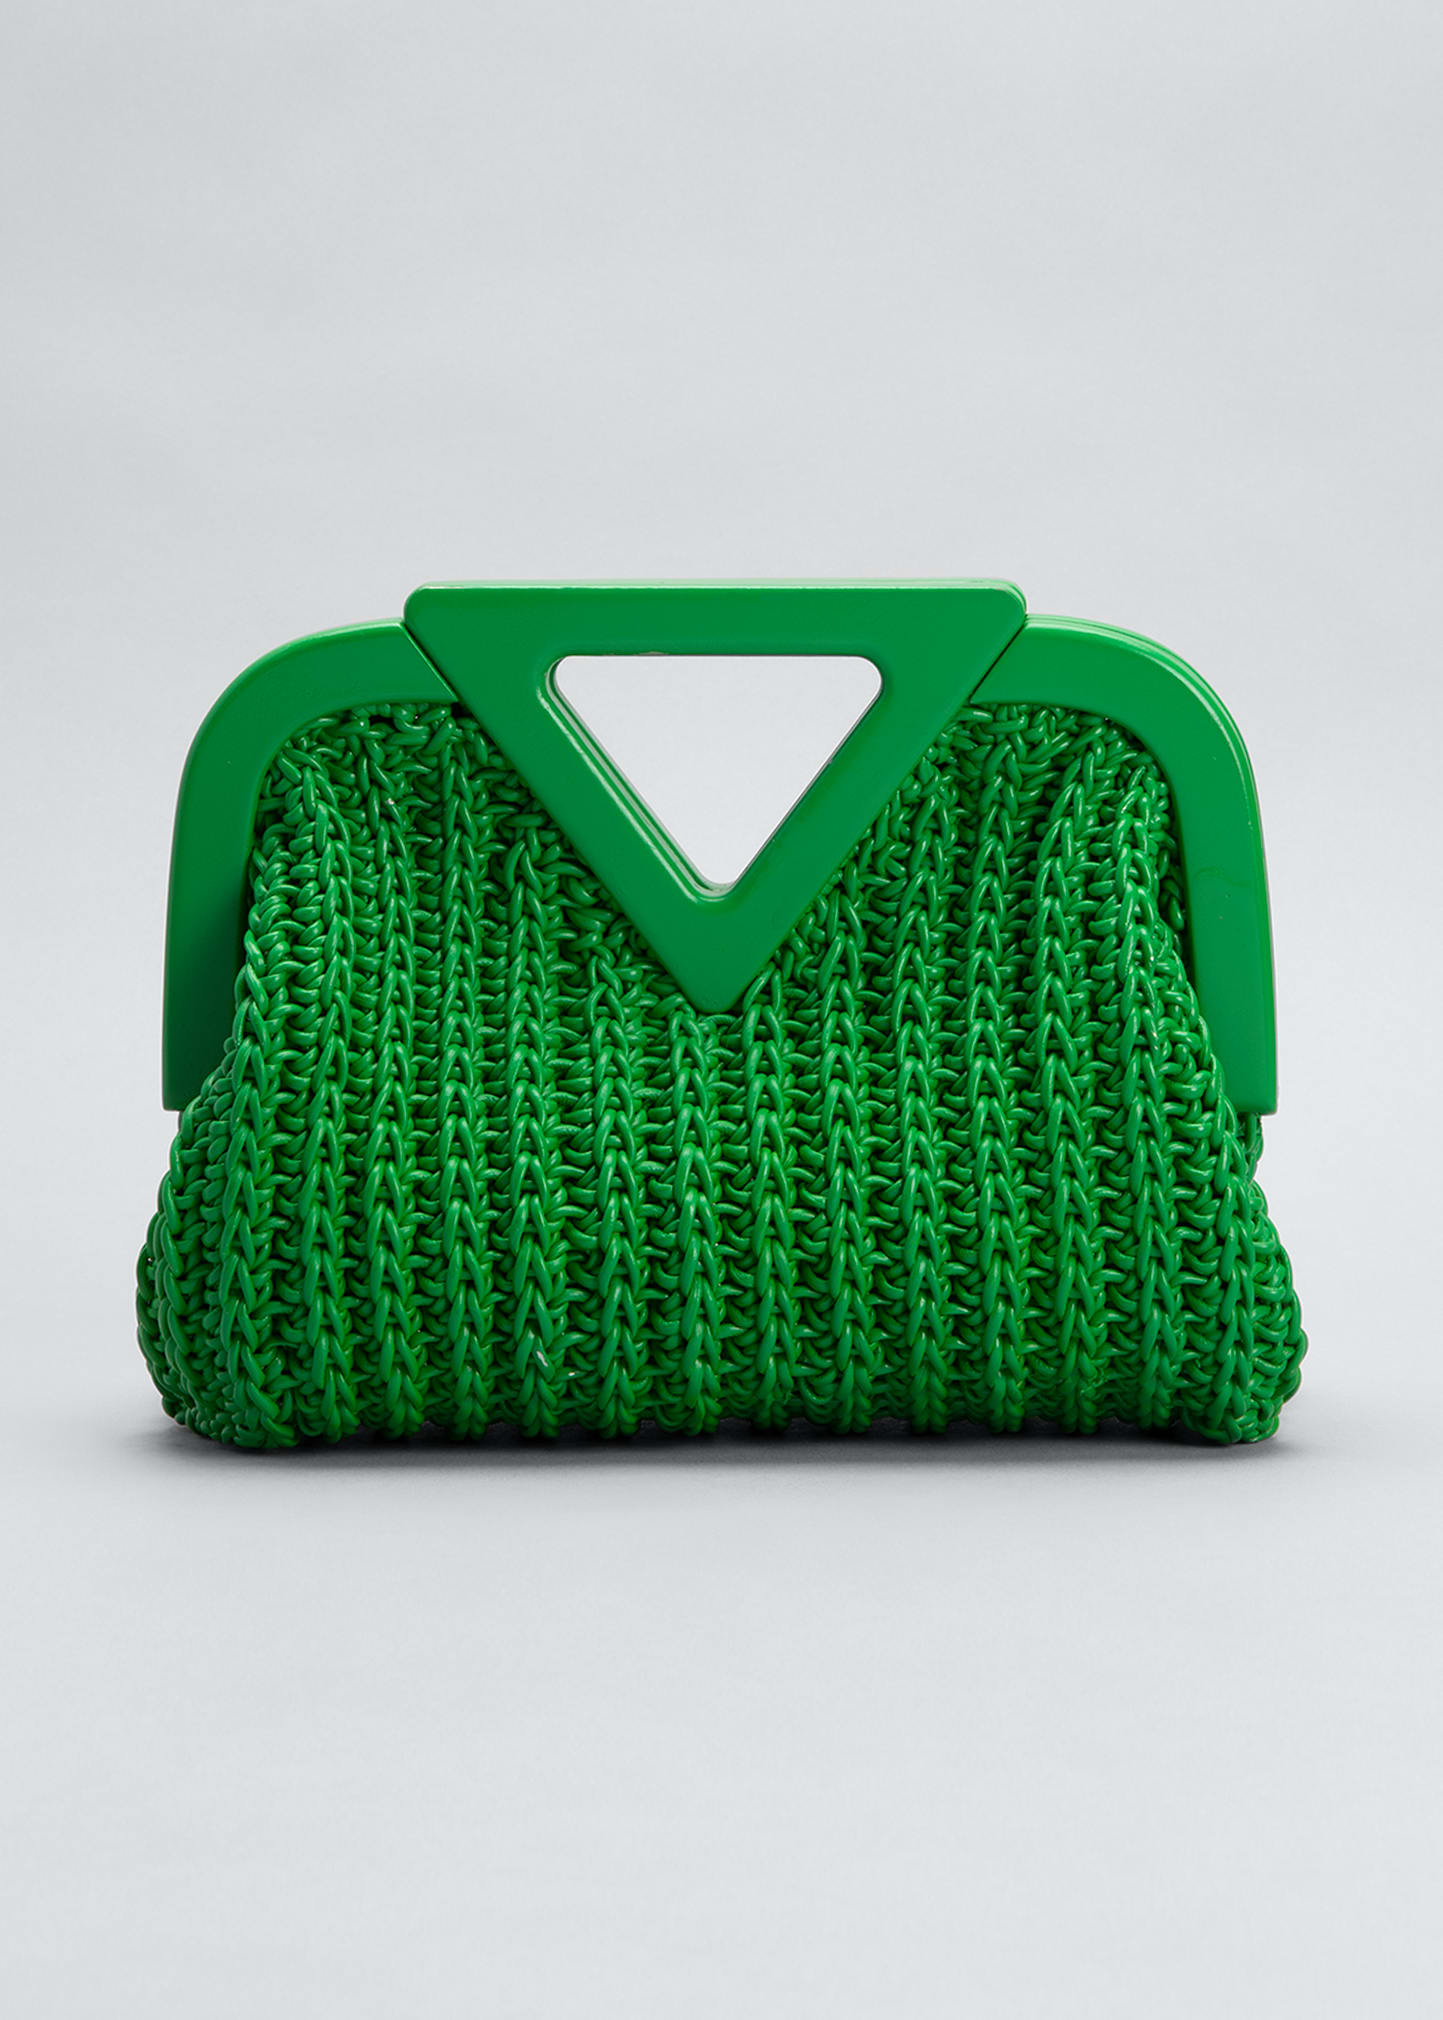 Bottega Veneta Point Small Crochet Top-Handle Bag